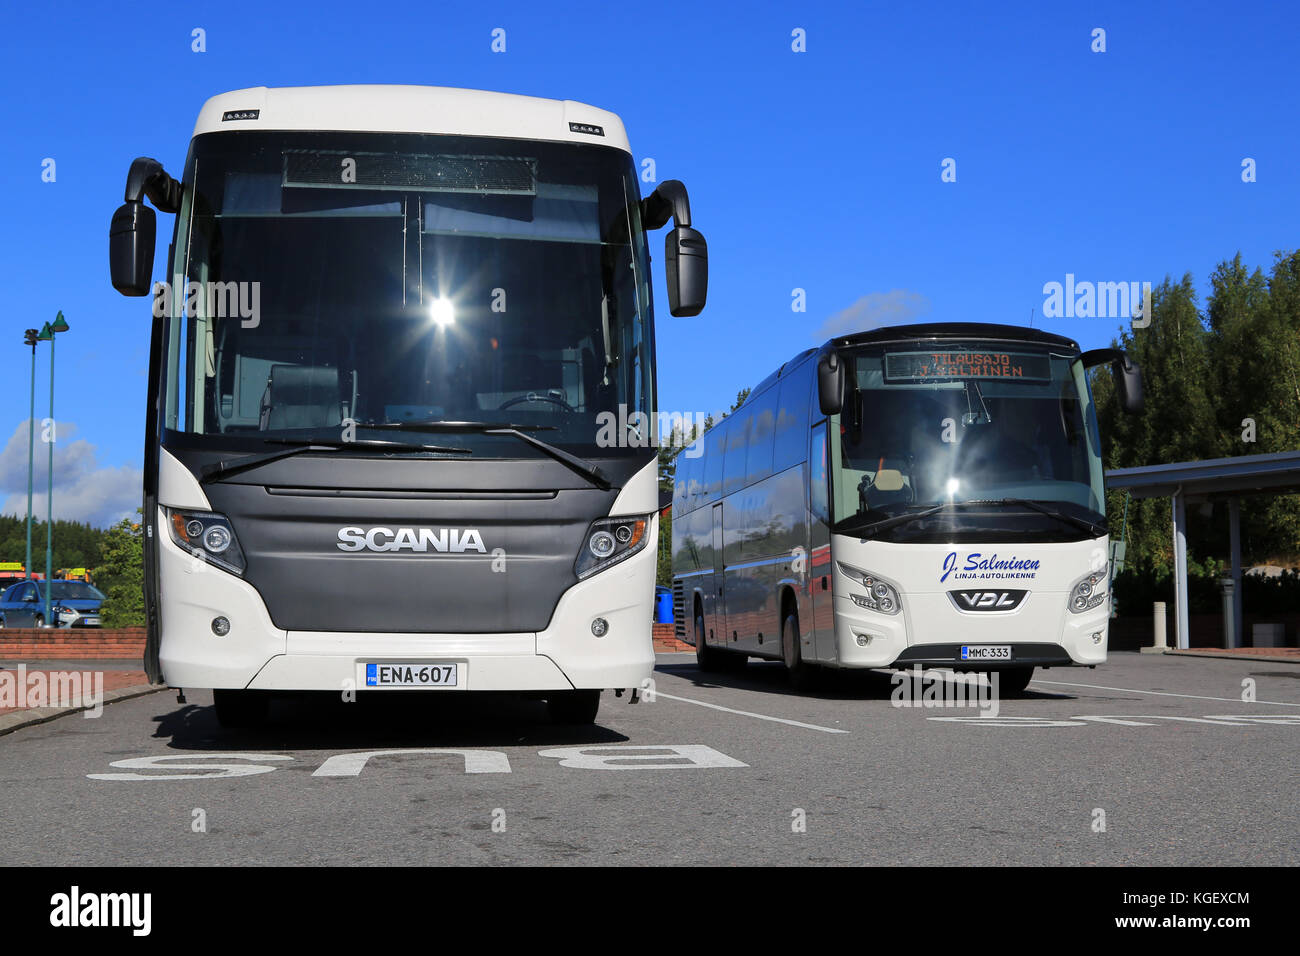 SALO, FINLANDIA - 29 AGOSTO 2015: Autobus White Scania Touring e VDL futura alla fermata di Salo. Scania Touring è un pullman turistico con chi Foto Stock